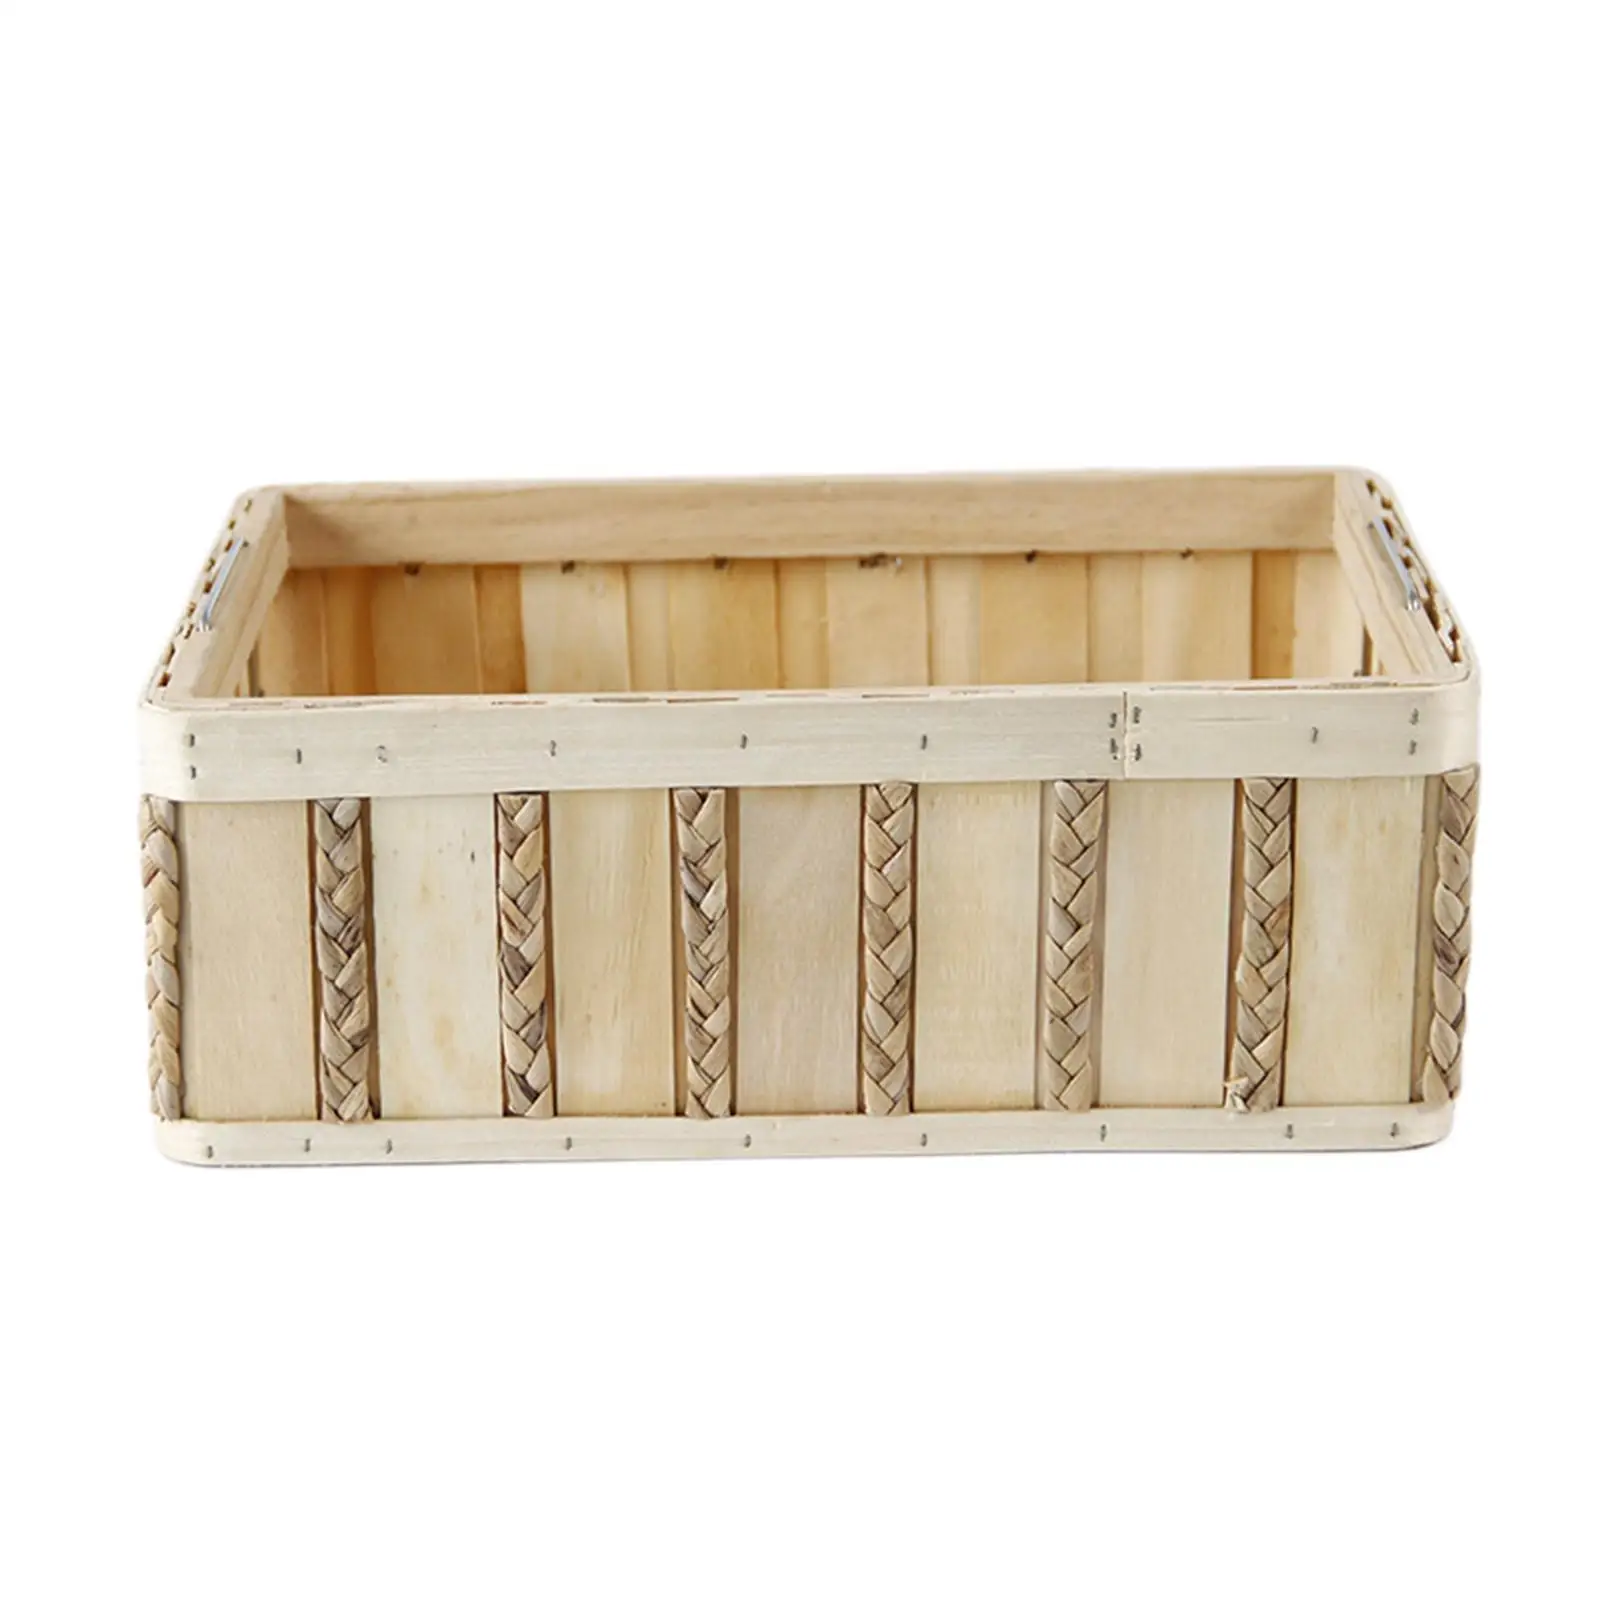 Wooden Storage Box Vintage Toys Snacks Fruit Bread Storage Bins Portable Rattan Organizer Basket for Kitchen Supplies Decorative